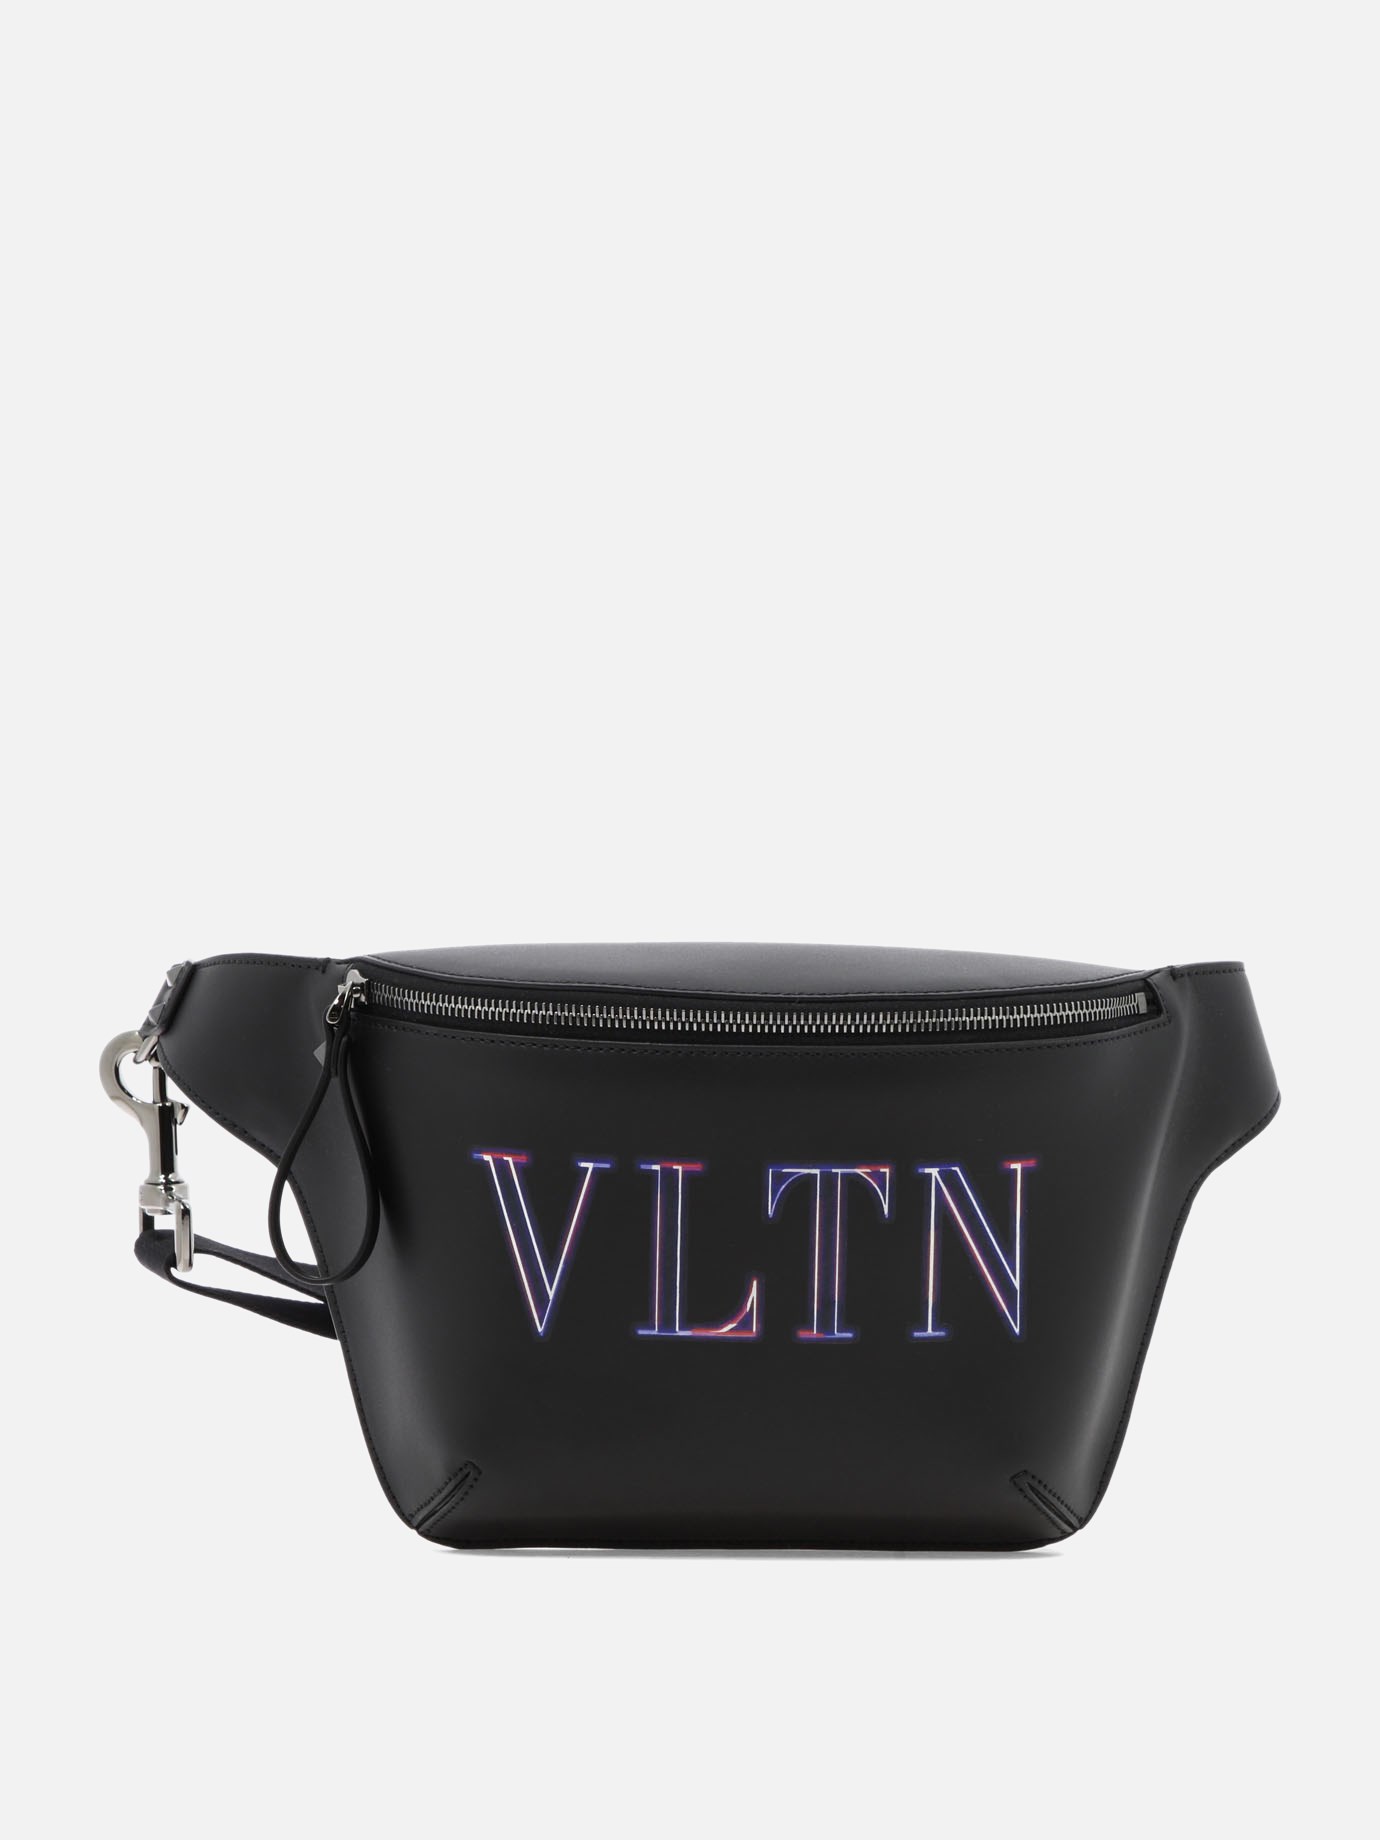  Neon VLTN  belt bagby Valentino Garavani - 5